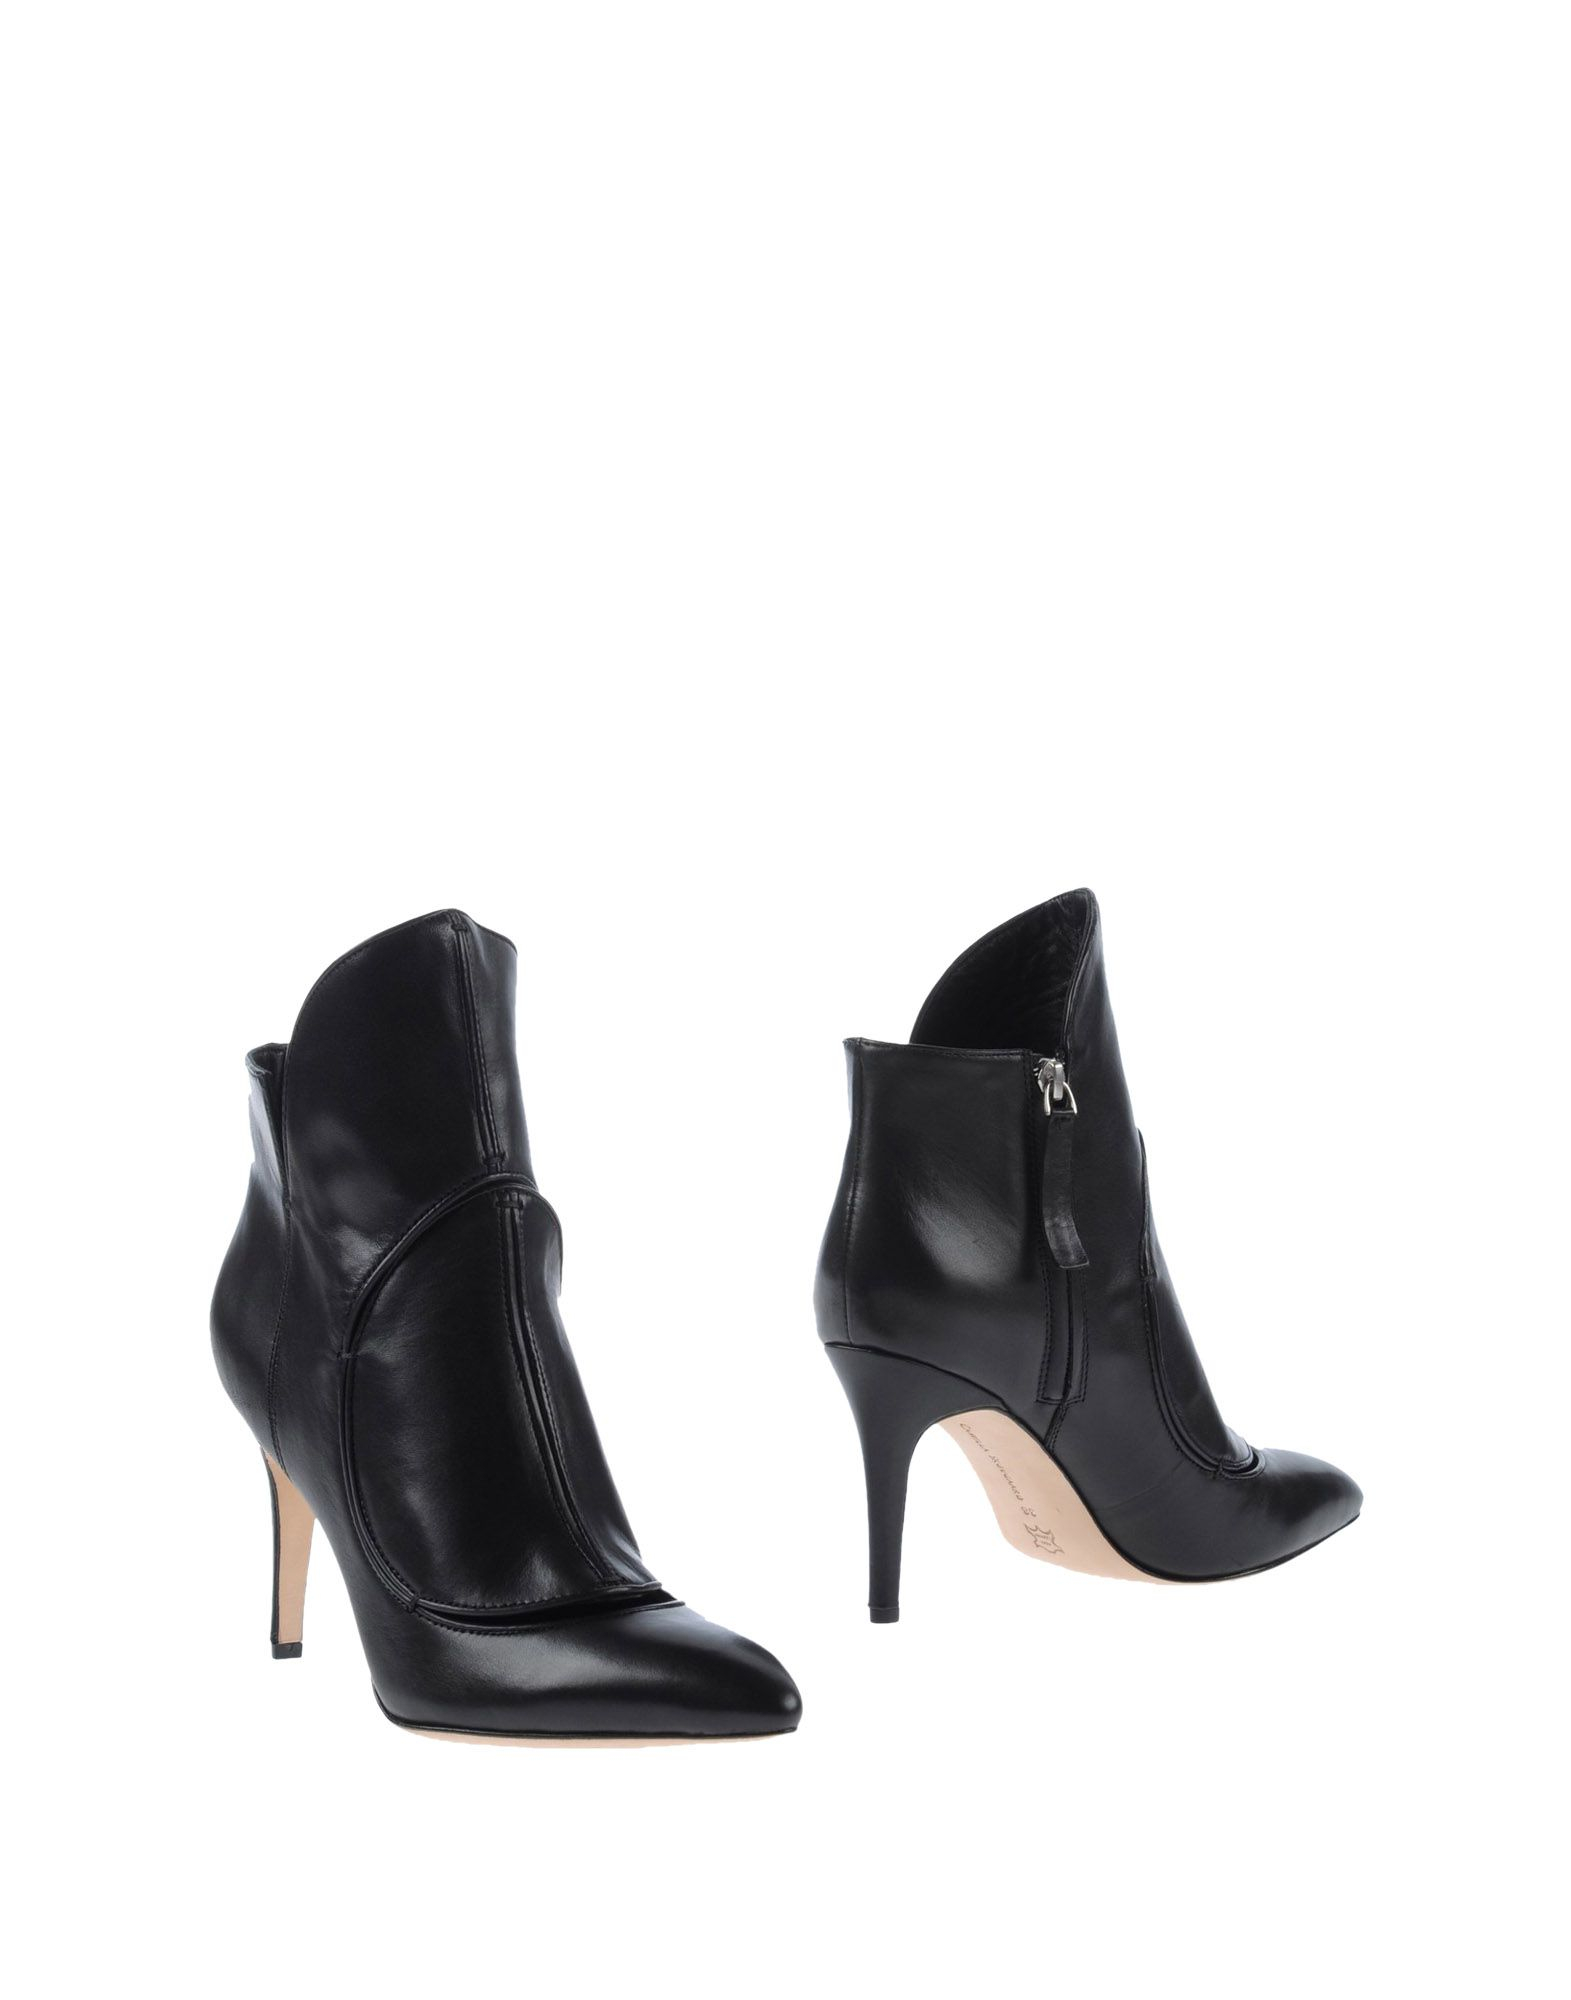 Camilla Skovgaard Ankle Boots in Black | Lyst